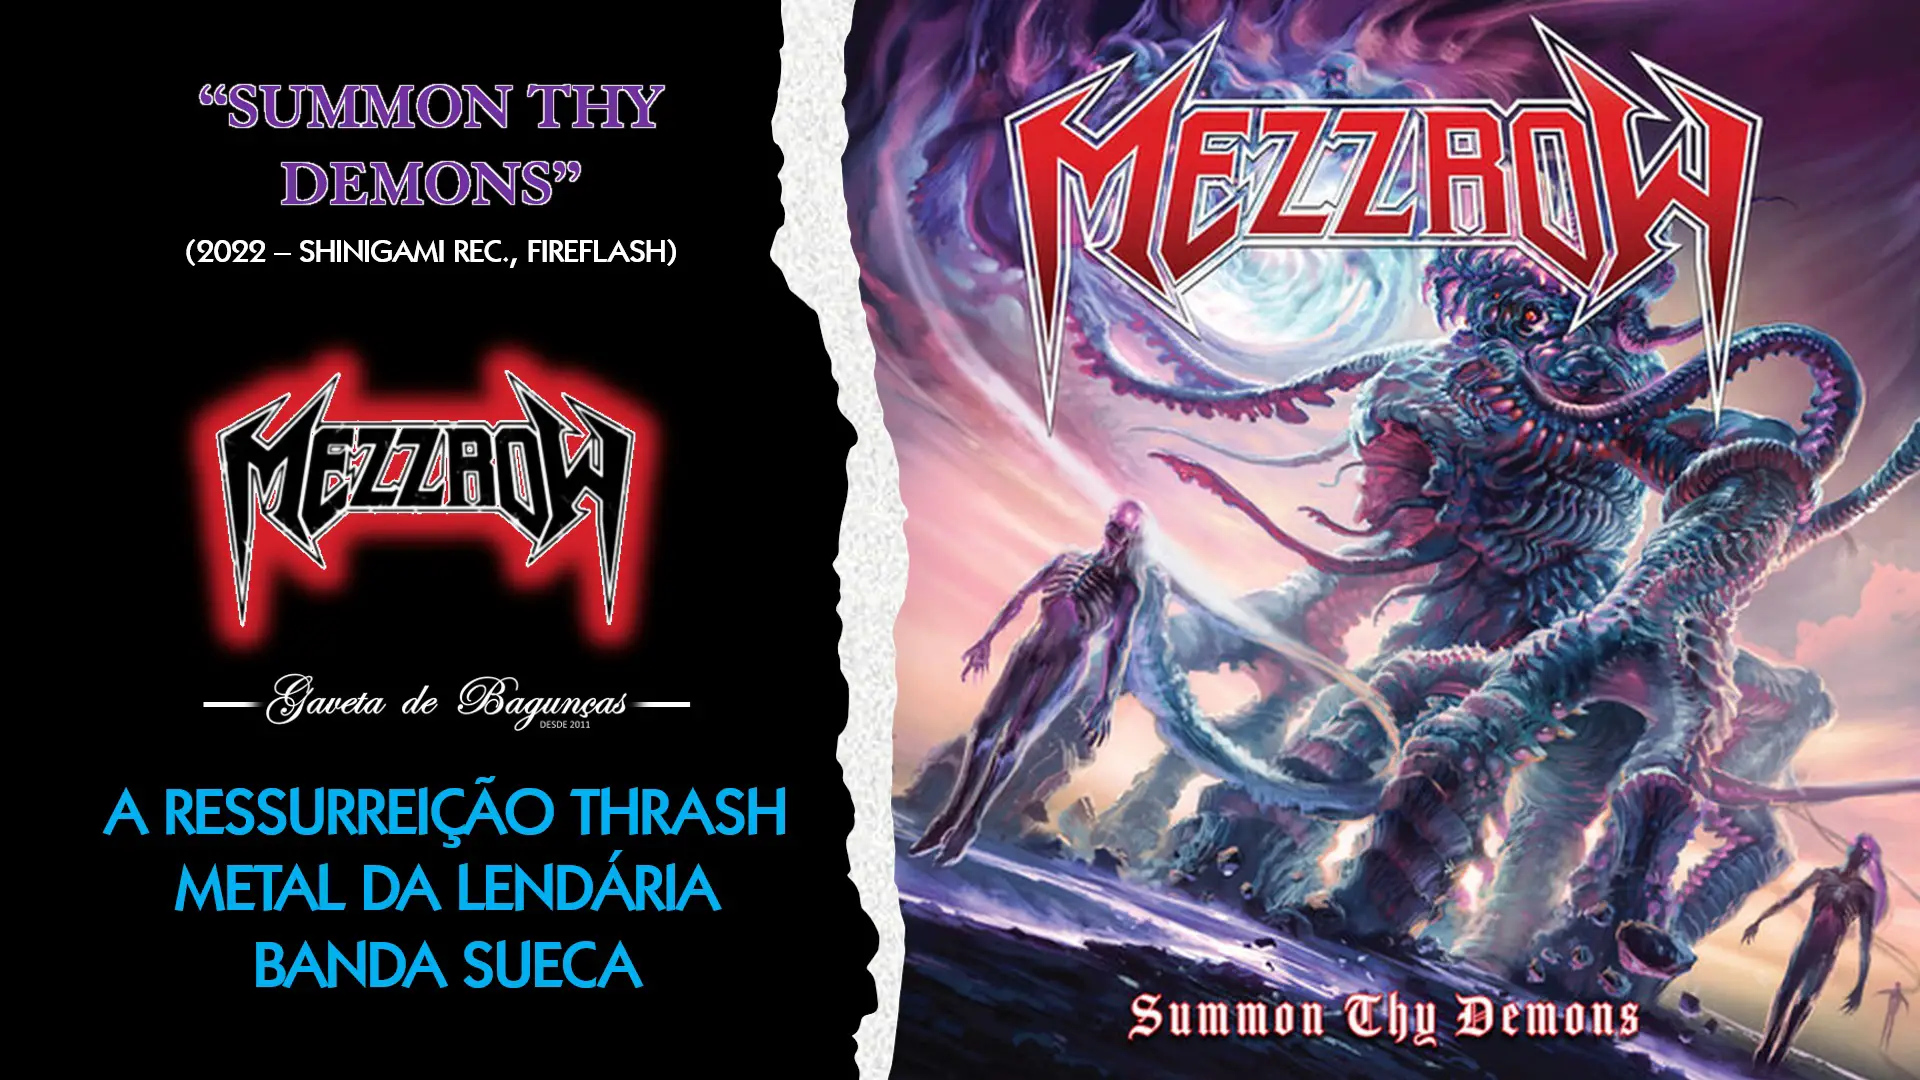 "Summon Thy Demons" marca o retorno triunfal do Mezzrow após 30 anos, consolidando sua posição no cenário do Thrash Metal. Com uma fusão única de tradição e inovação, o álbum cativa os fãs antigos e conquista novos ouvintes. Explore cada faceta deste renascimento musical nesta análise completa.